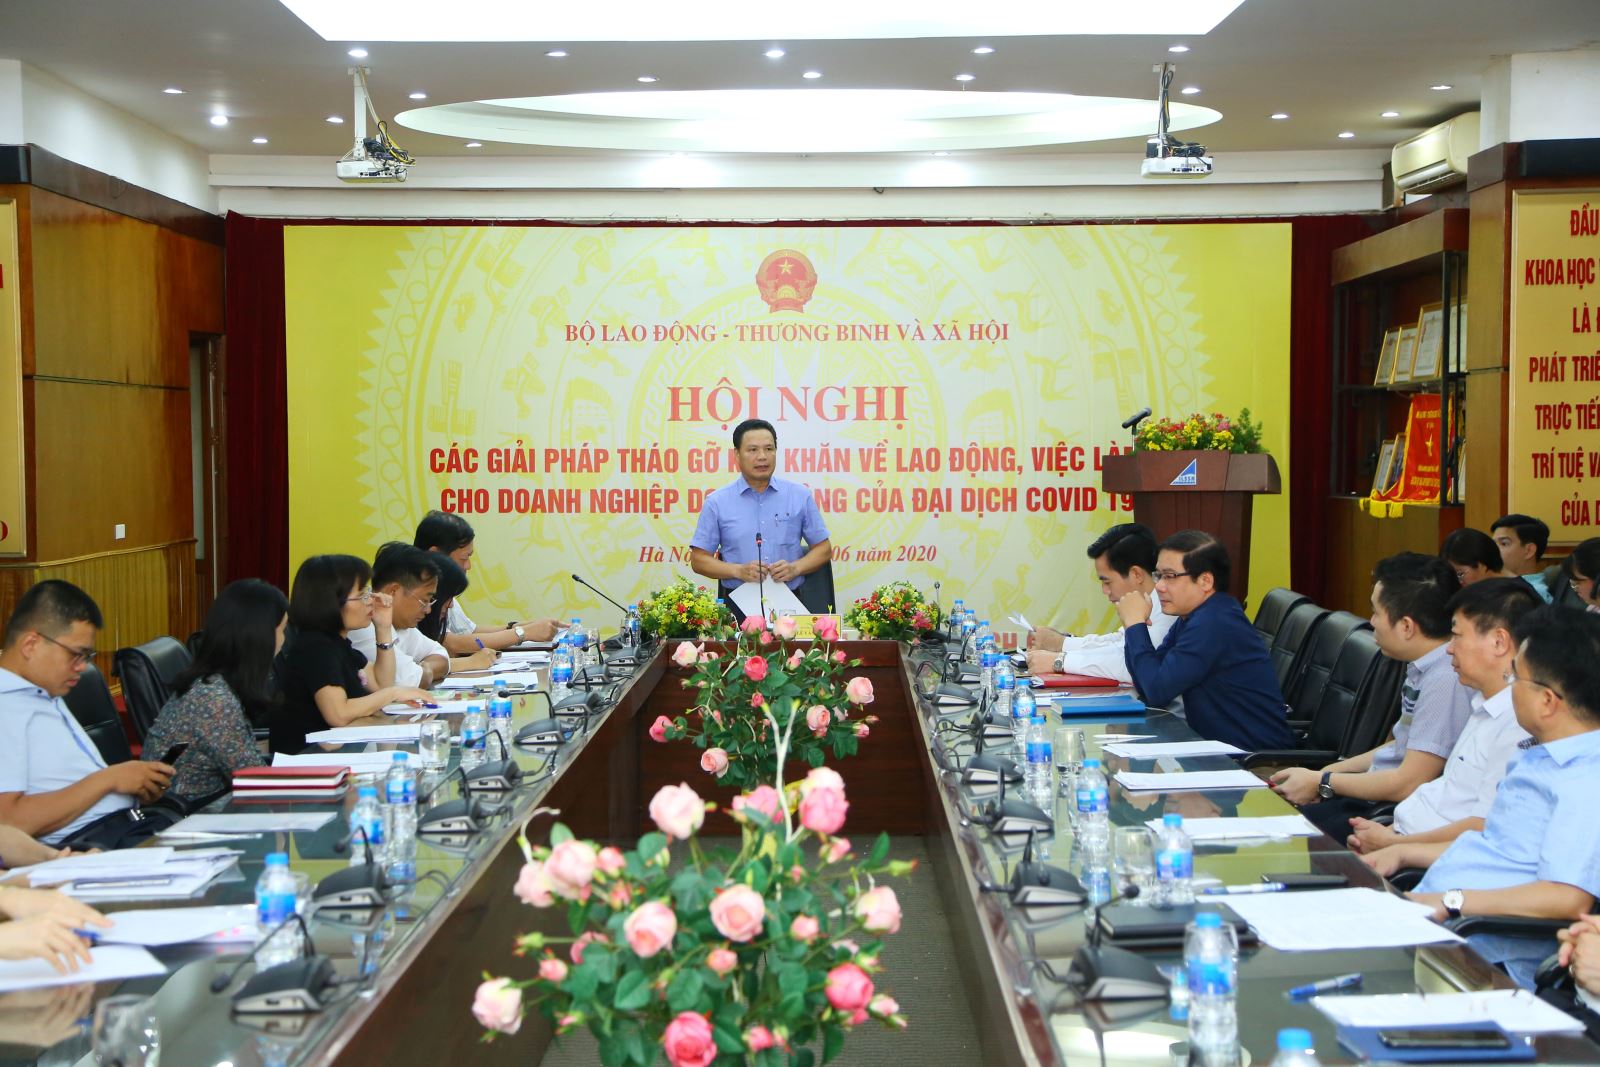 Thứ trưởng Bộ LĐ-TB&XH Lê Văn Thanh trao đổi với đại diện các doanh nghiệp nhằm tháo gỡ khó khăn cho lao động.